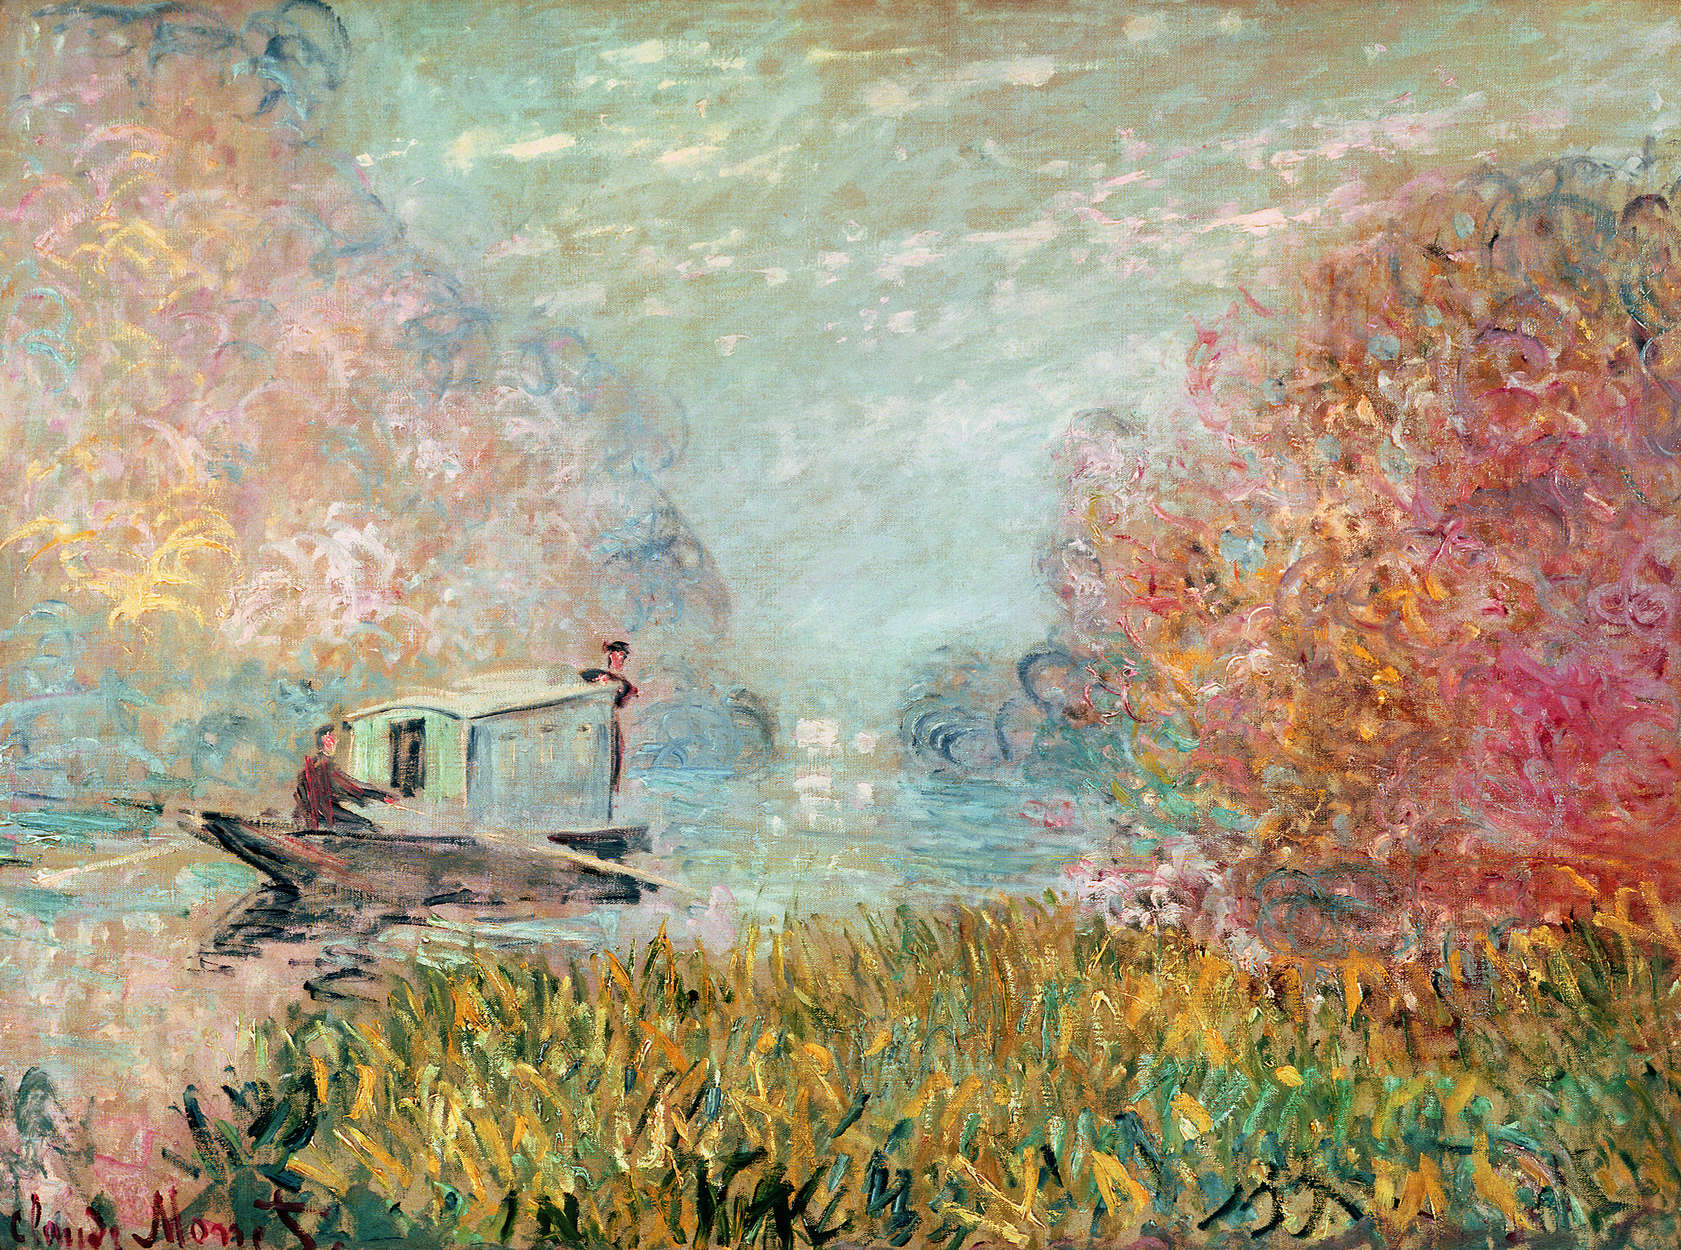             Fototapete "Das Bootsatelier auf der Seine" von Claude Monet
        